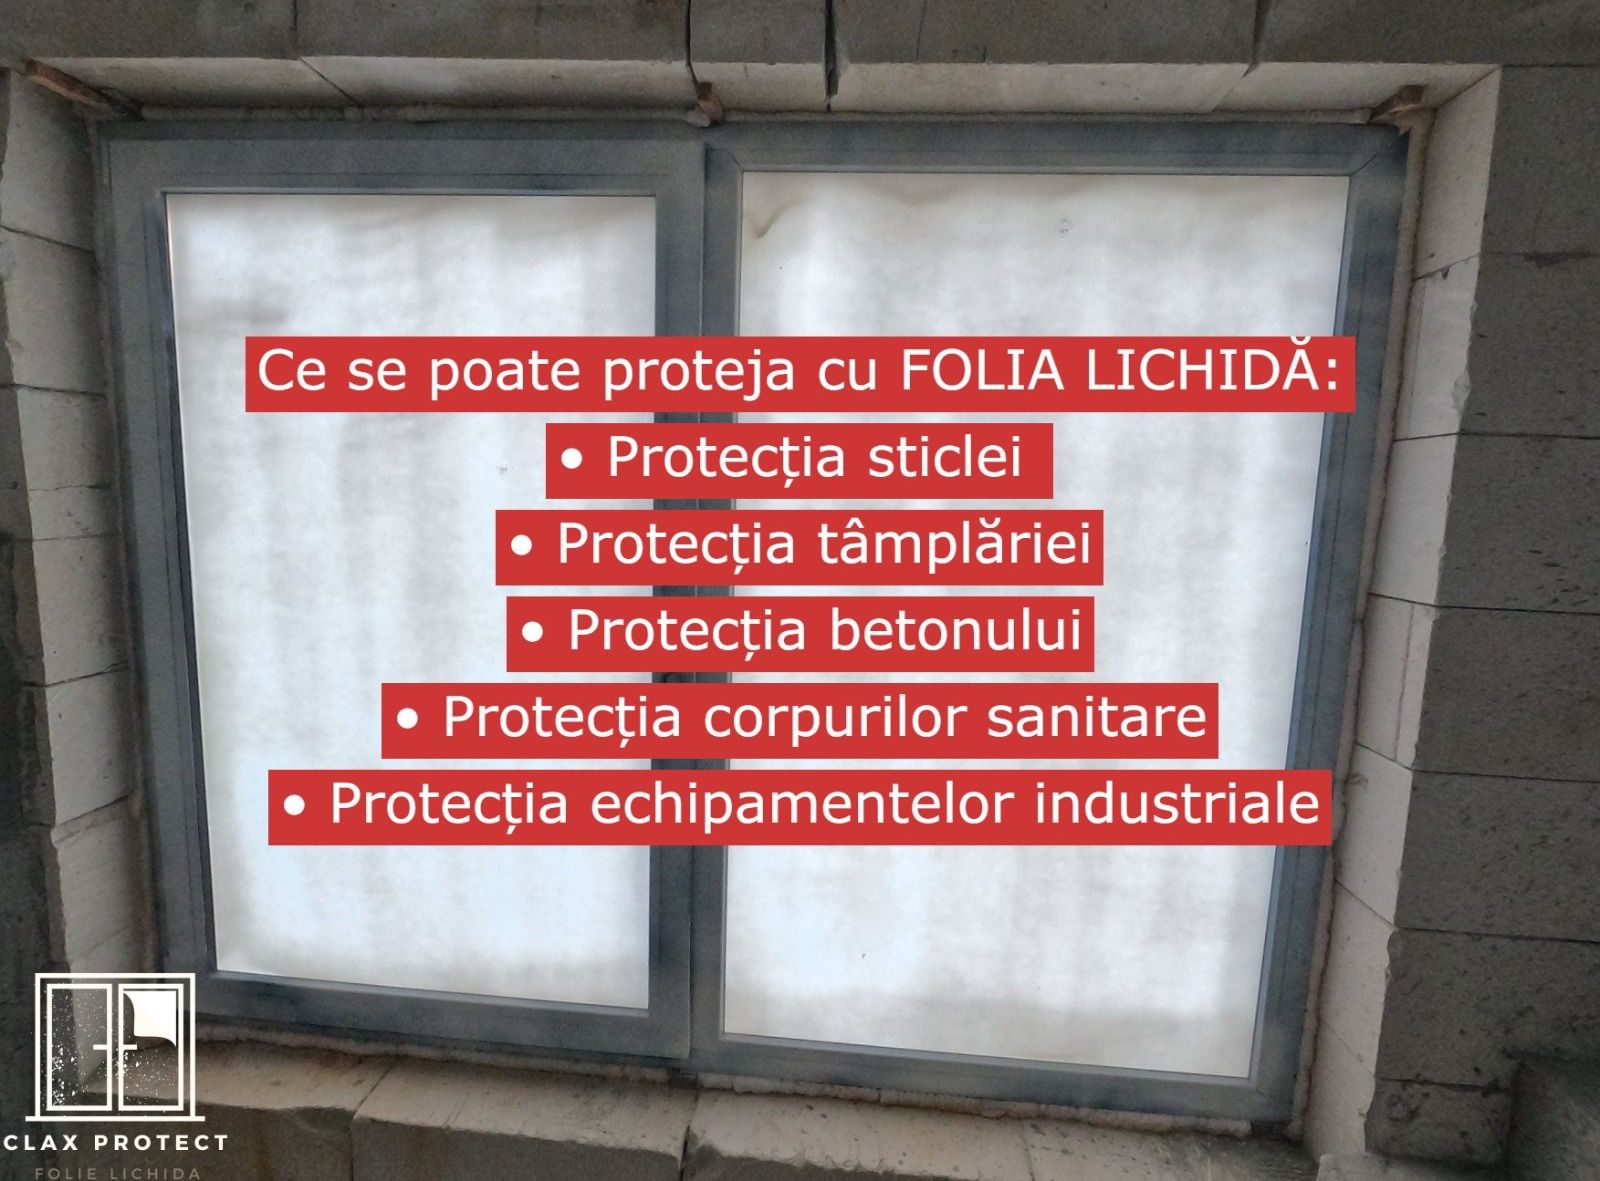 Folie lichida Cluj (protecție geamuri)